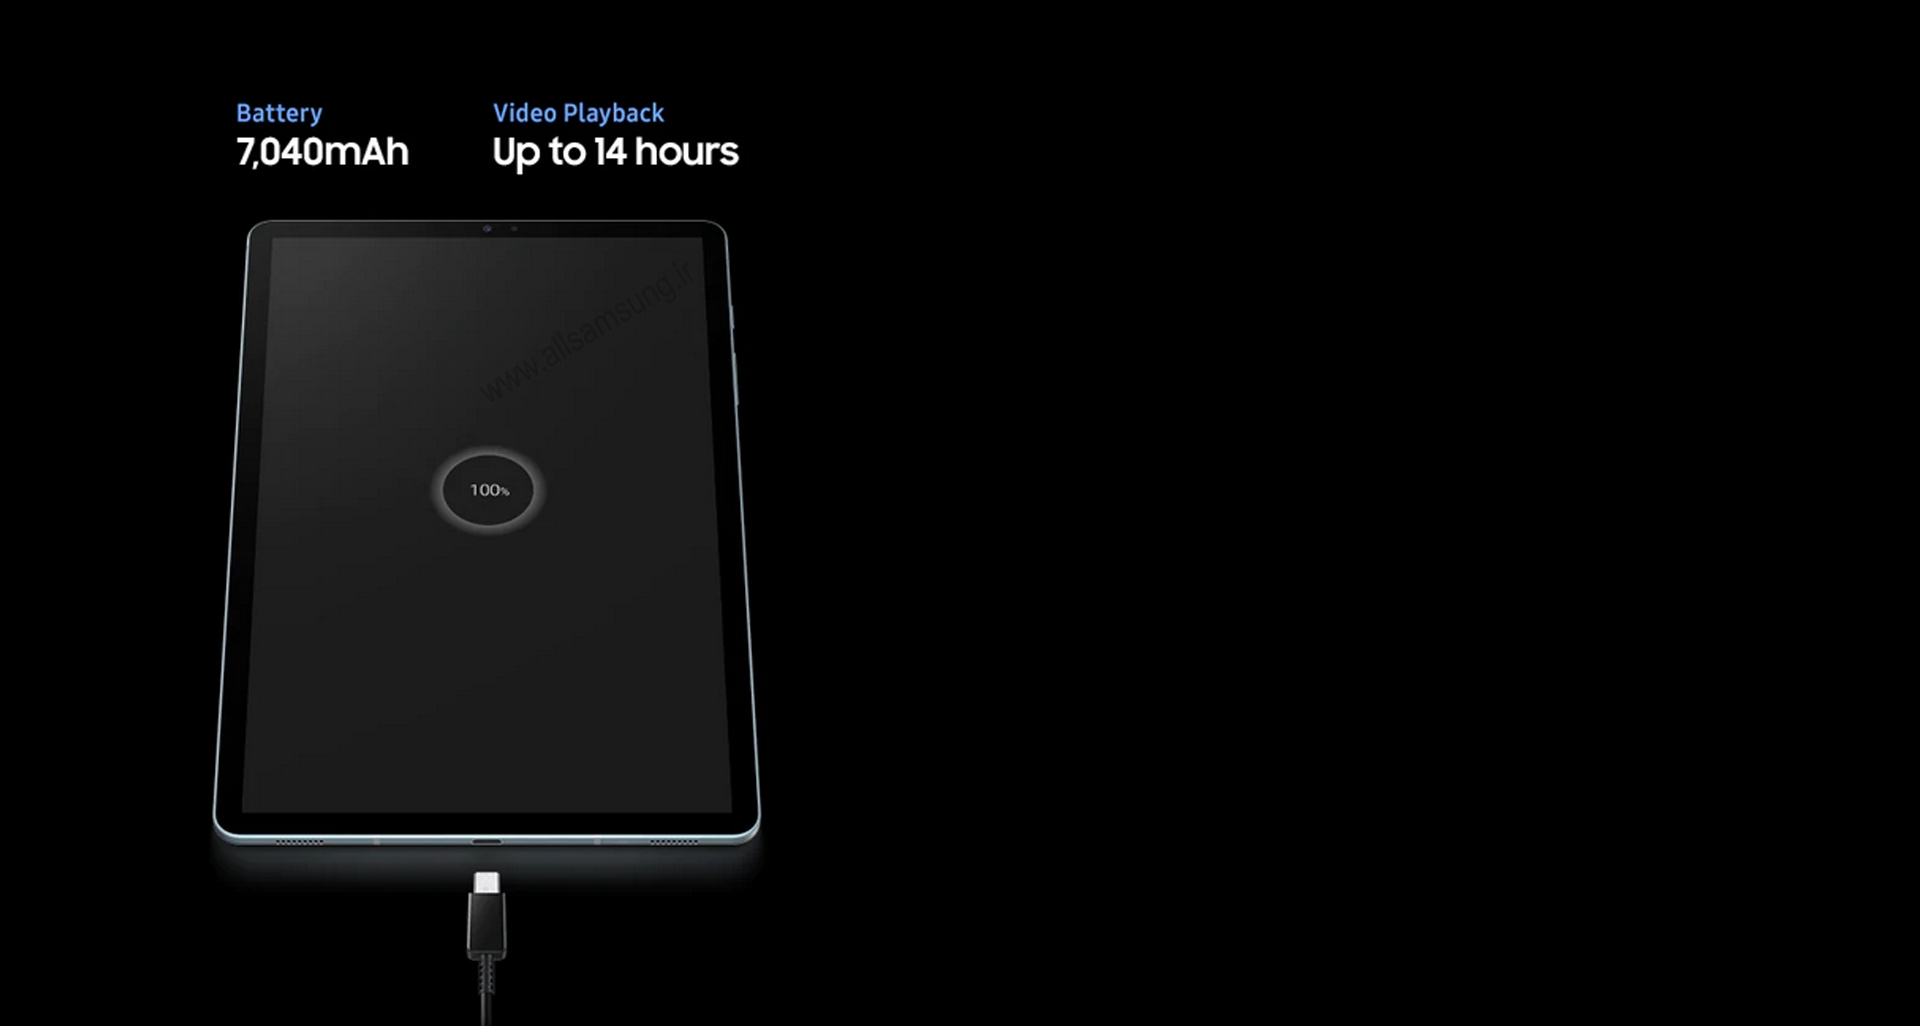 تبلت S6 با قدرت کافی برای همراهی کردن با شما در تمام طول روز